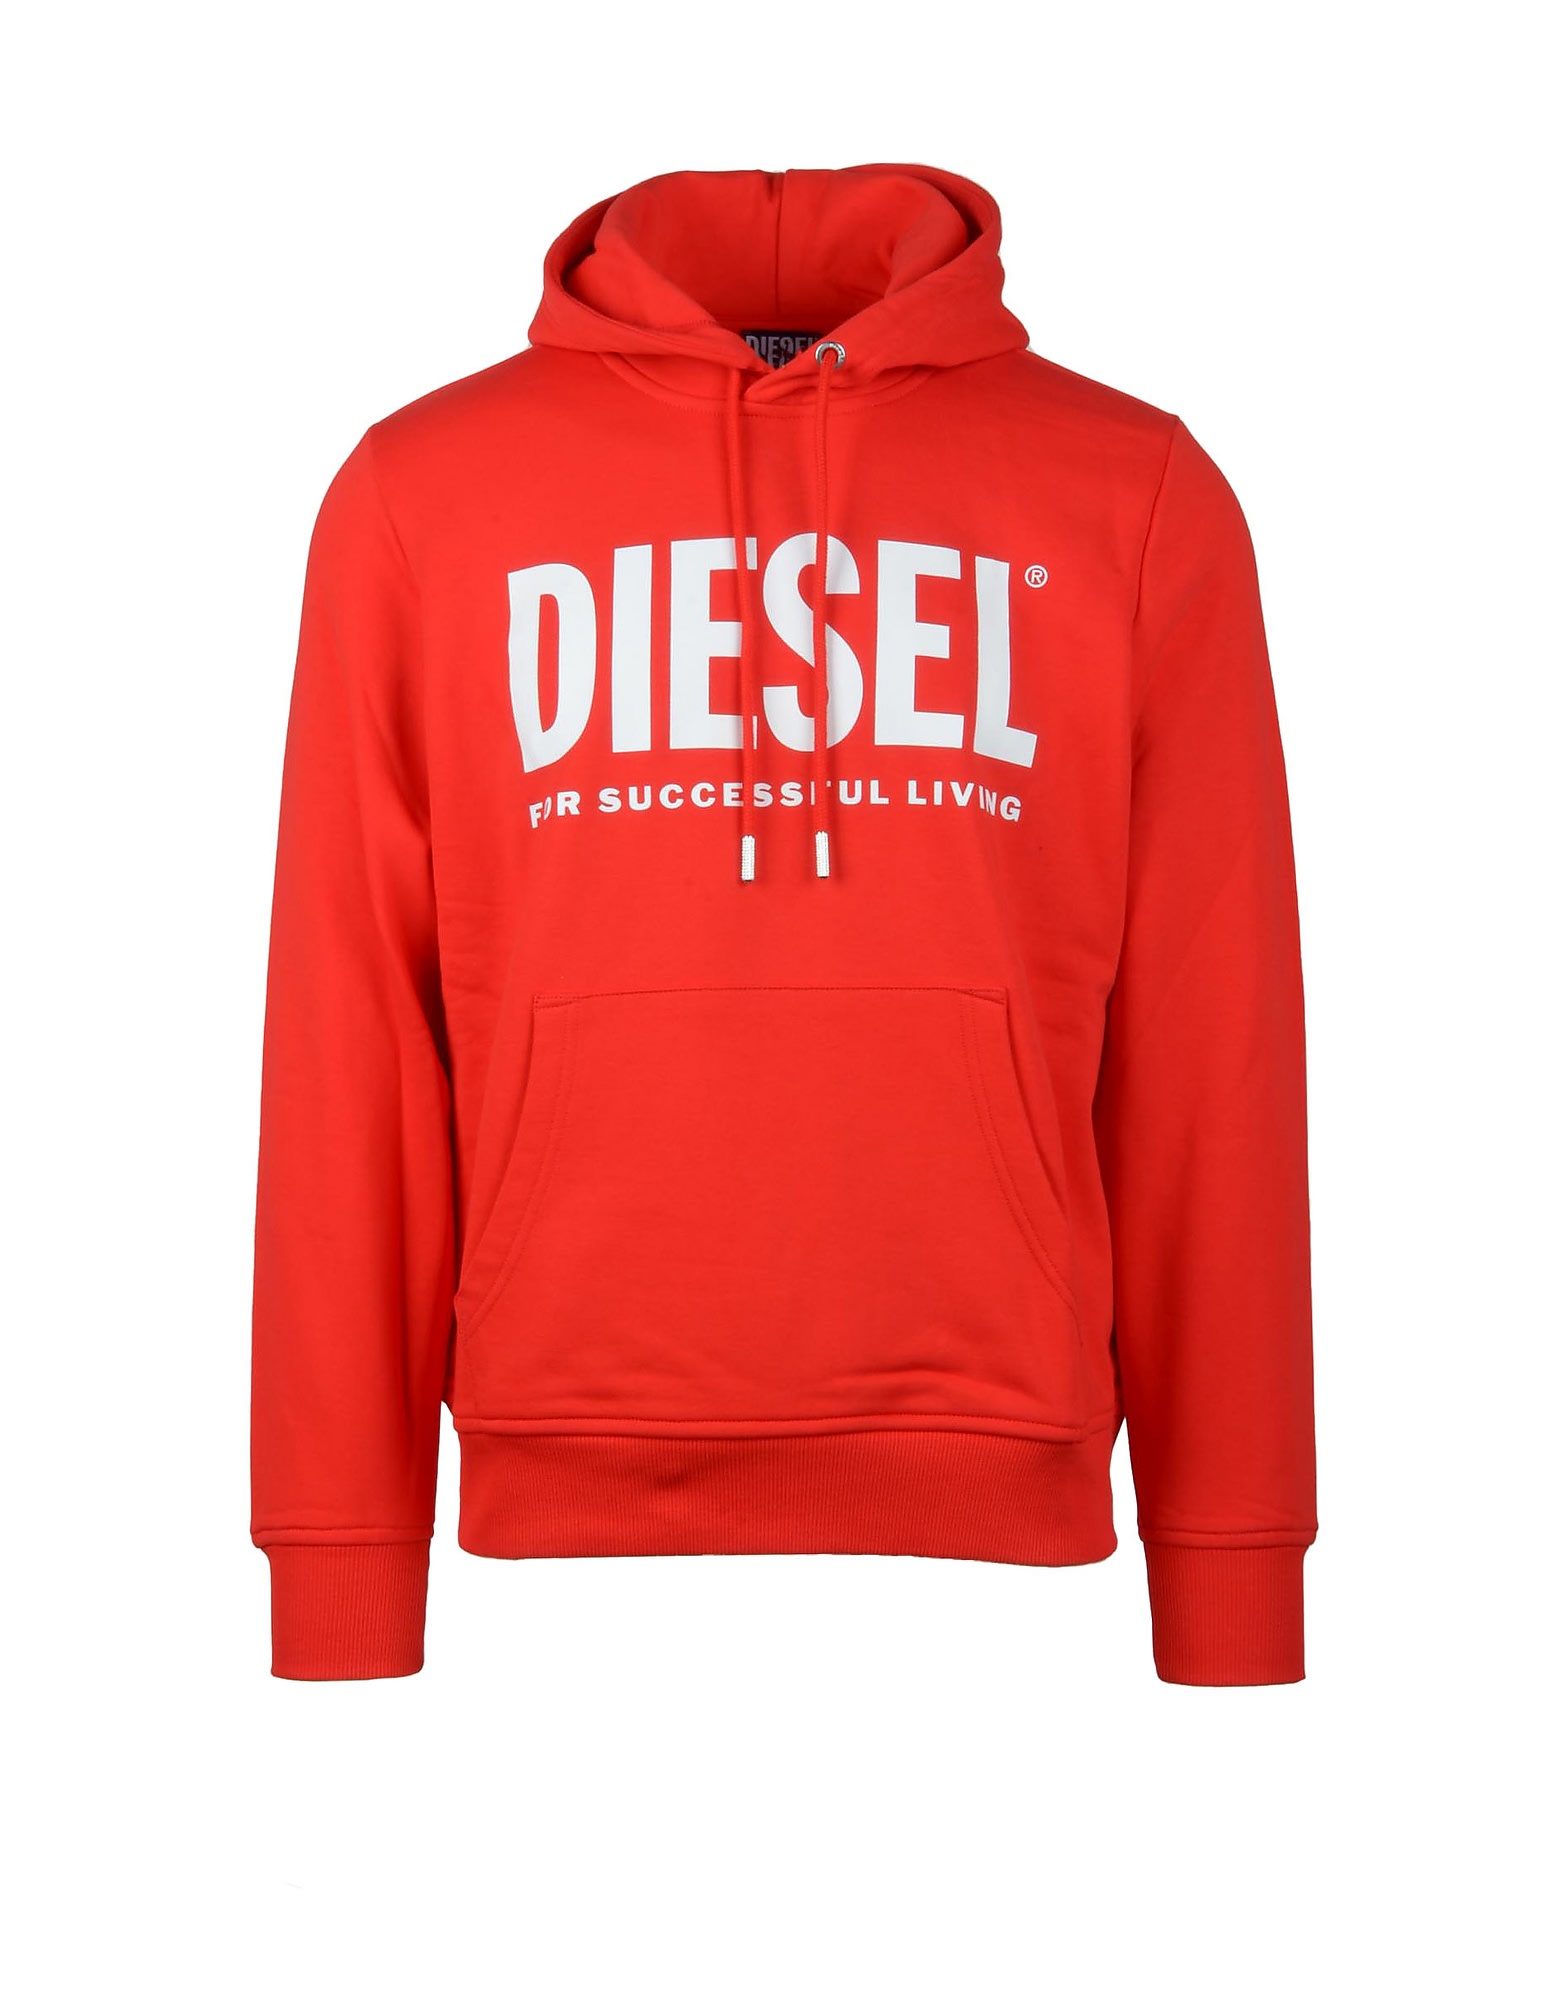 Diesel Mens Red Sweatshirt